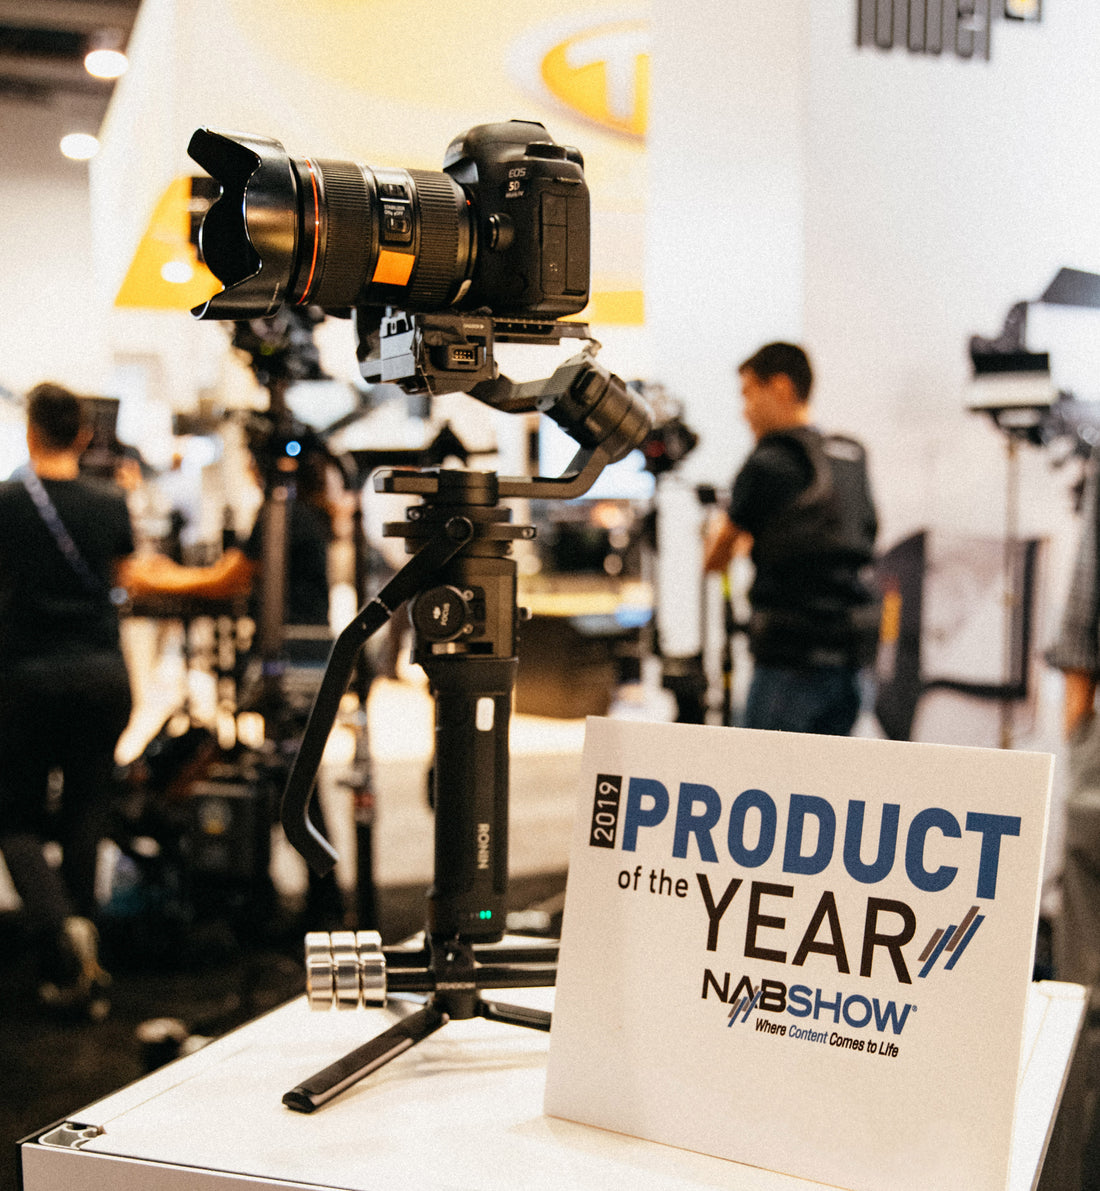 Die neue Steadicam Steadimate-S der Tiffen Company gewinnt 2019 NAB Show Product of the Year